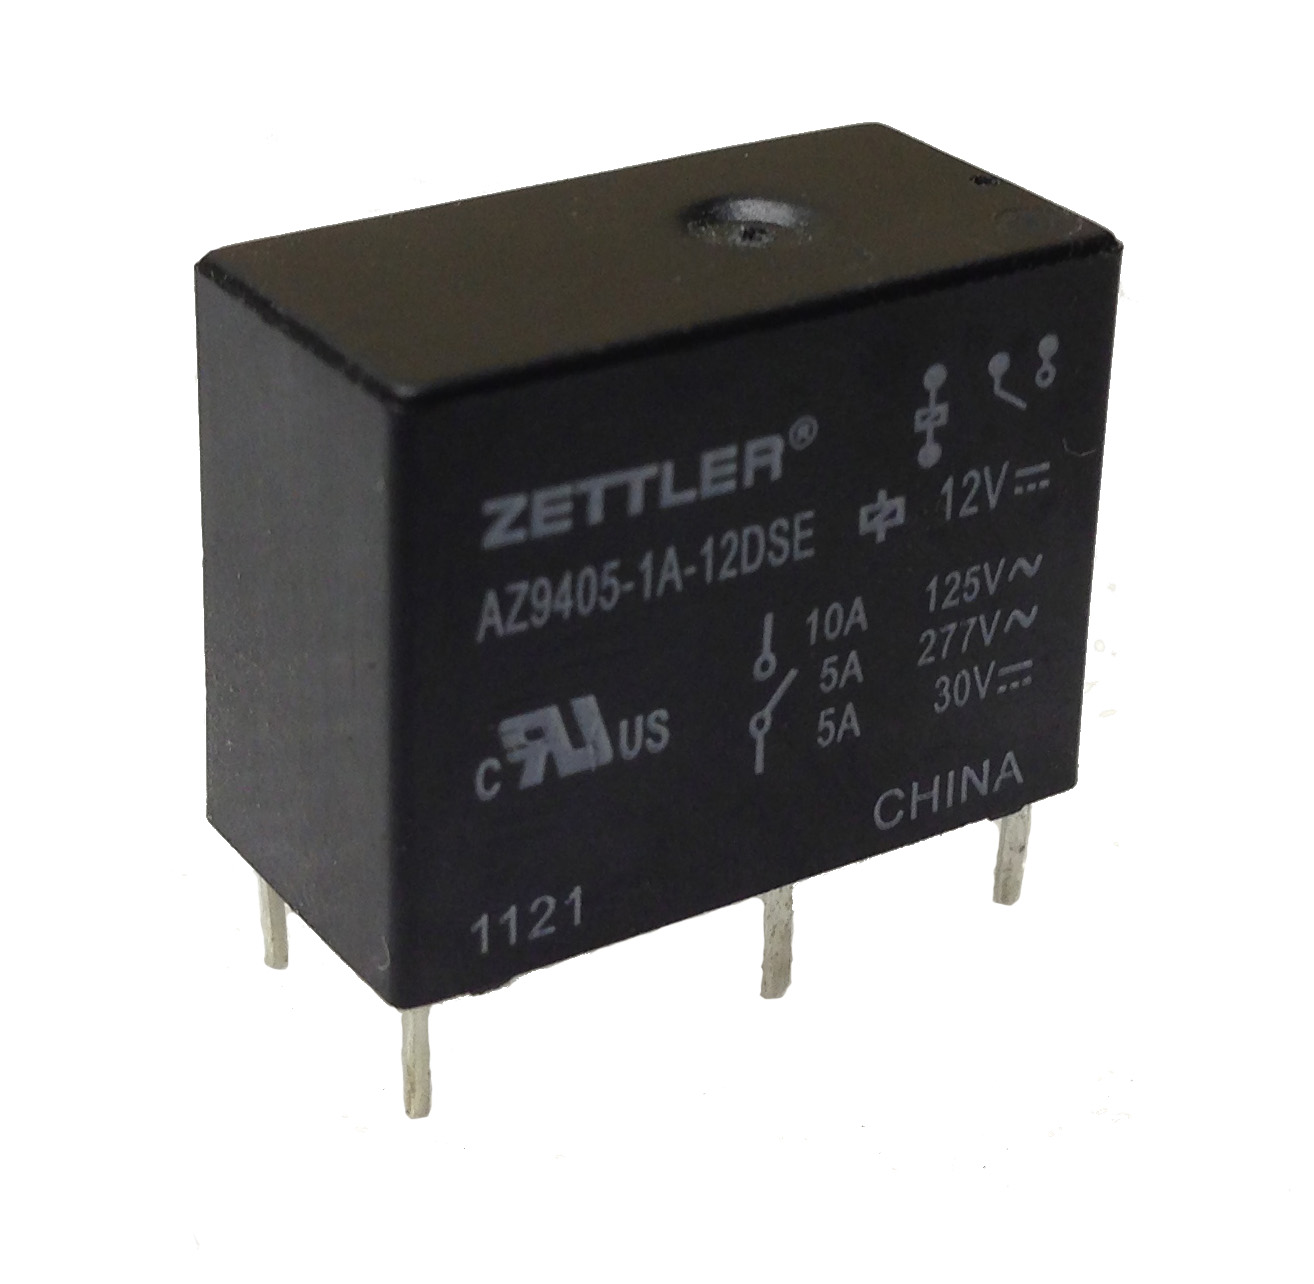 AZ9405 - 10 AMP MINIATURE POWER RELAY